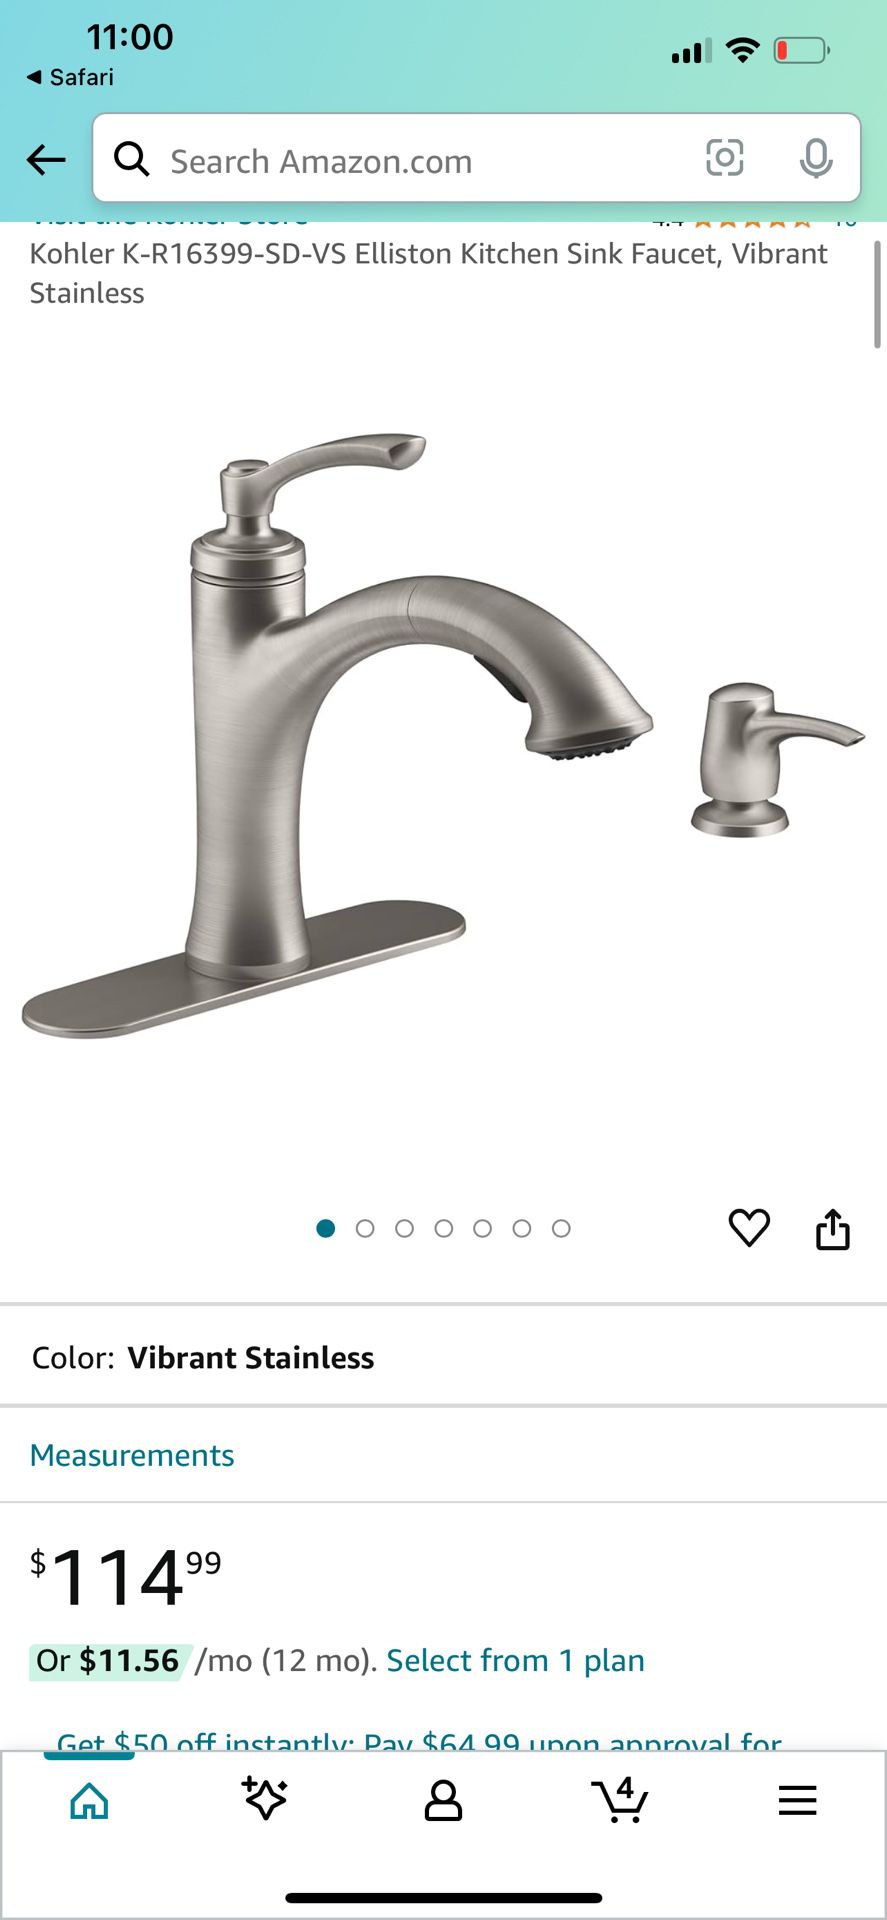 Kohler K-R16399-SD-VS Elliston Kitchen Sink Faucet, Vibrant Stainless